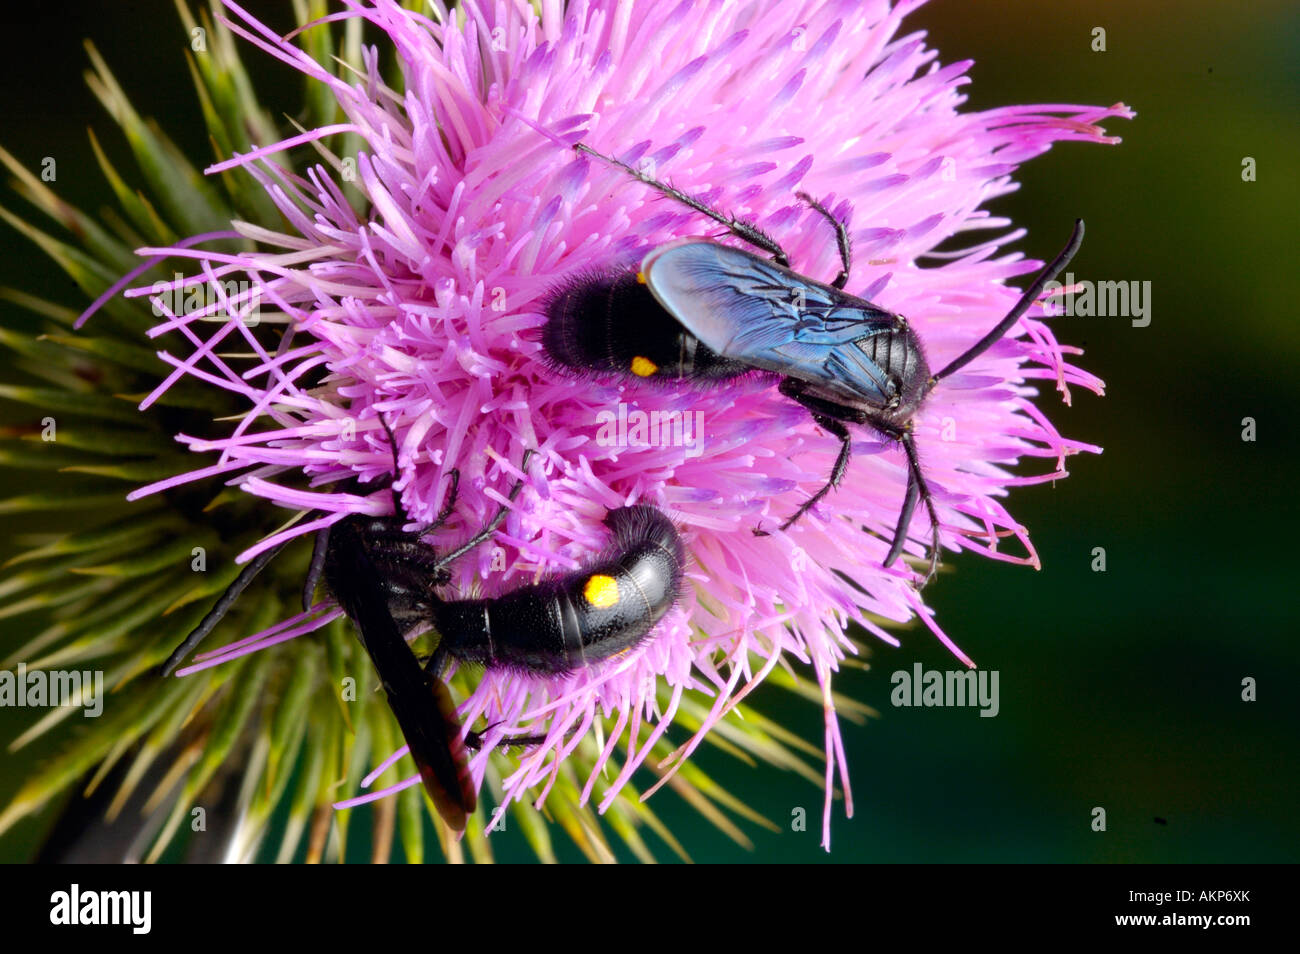 Australian flower wasps on thistle Stock Photo